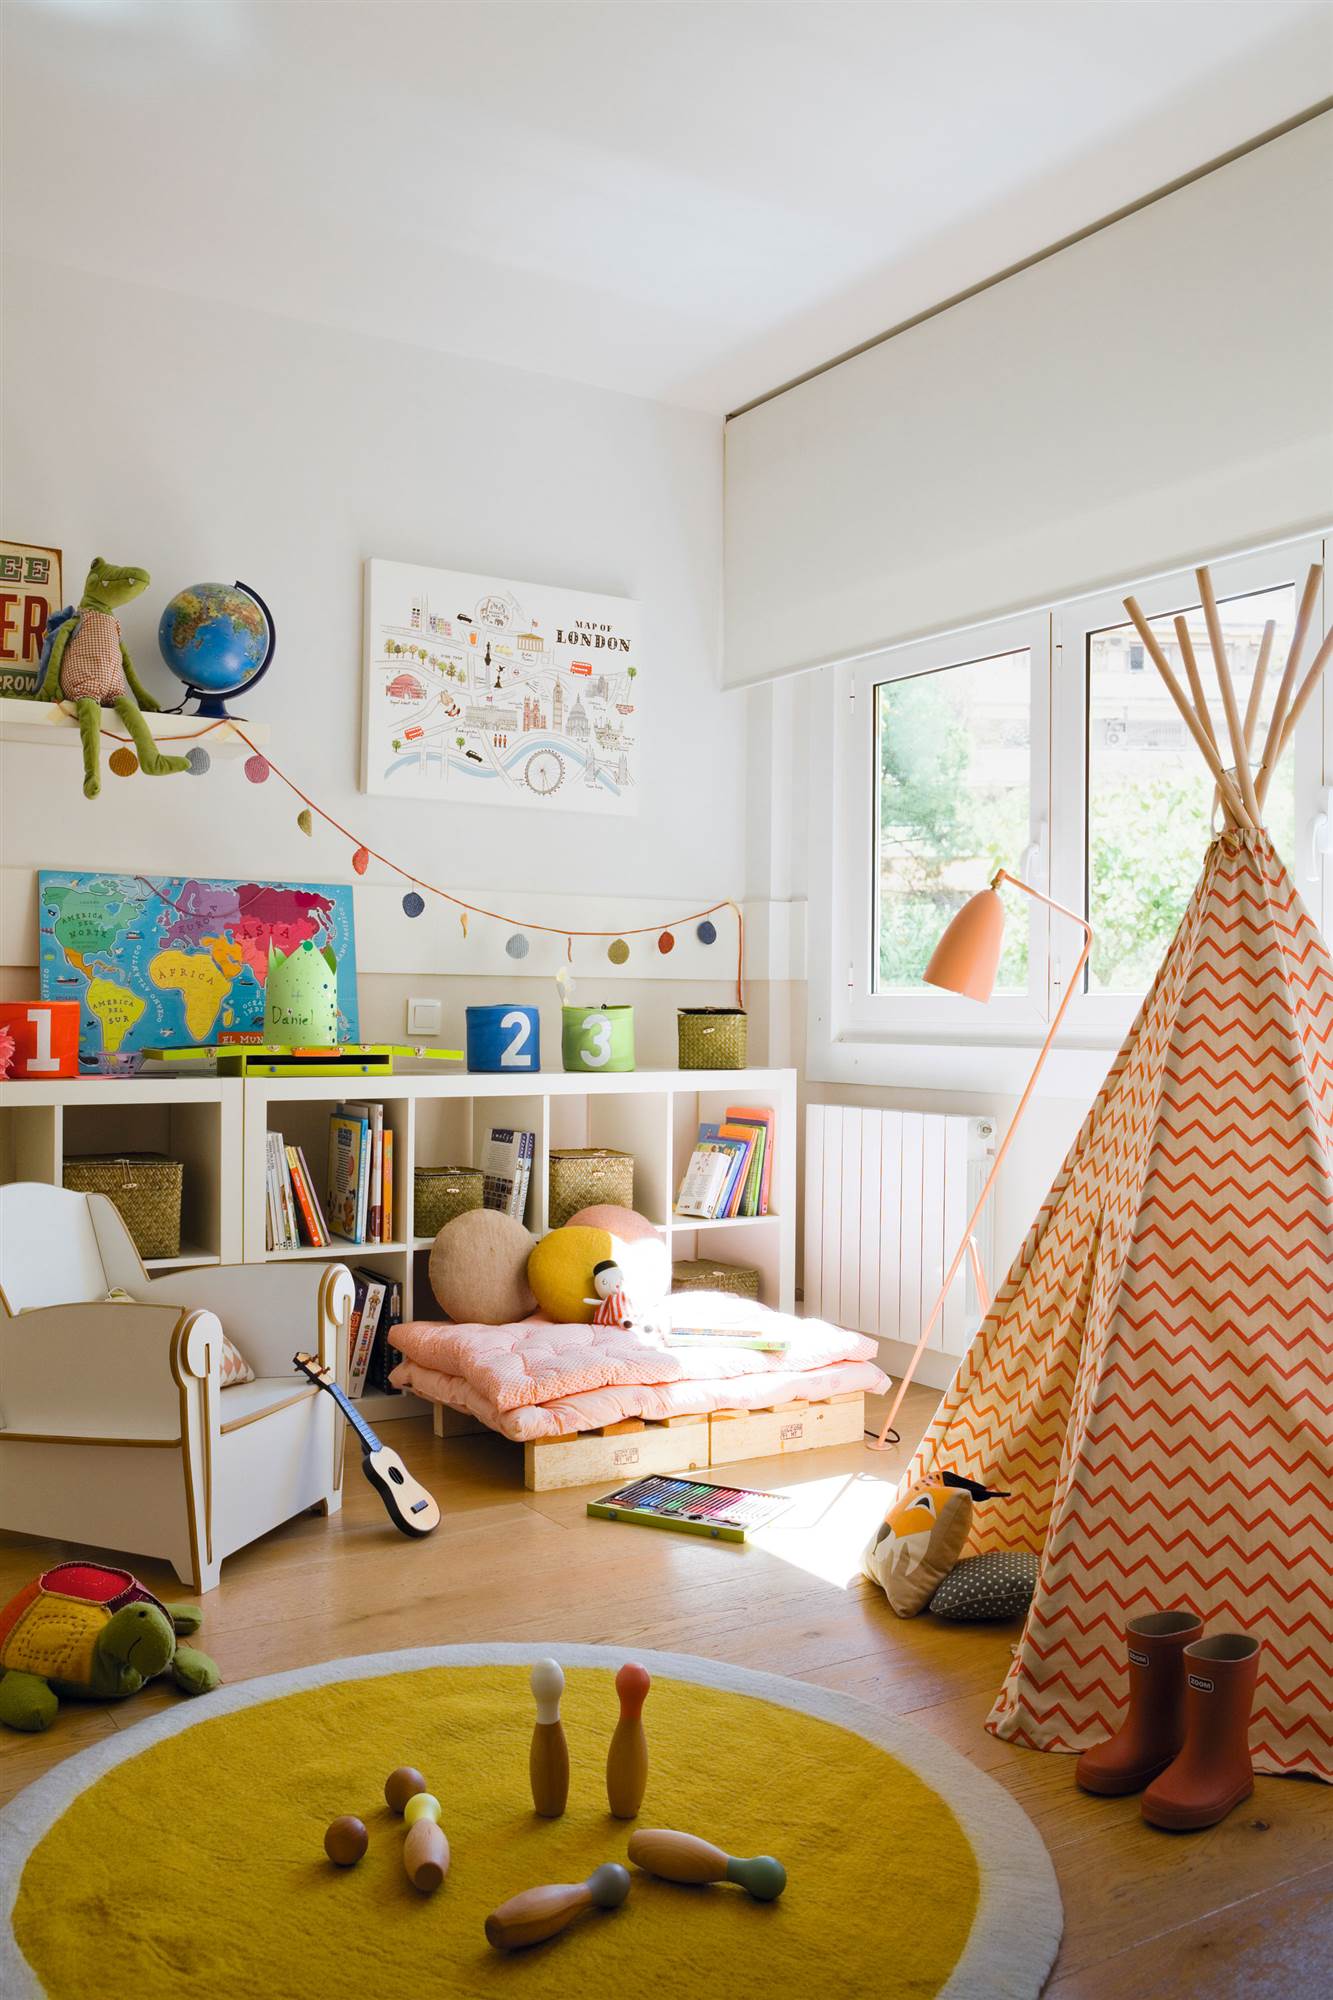 Dormitorio infantil con zona de juegos con tienda tipi y estantería baja.